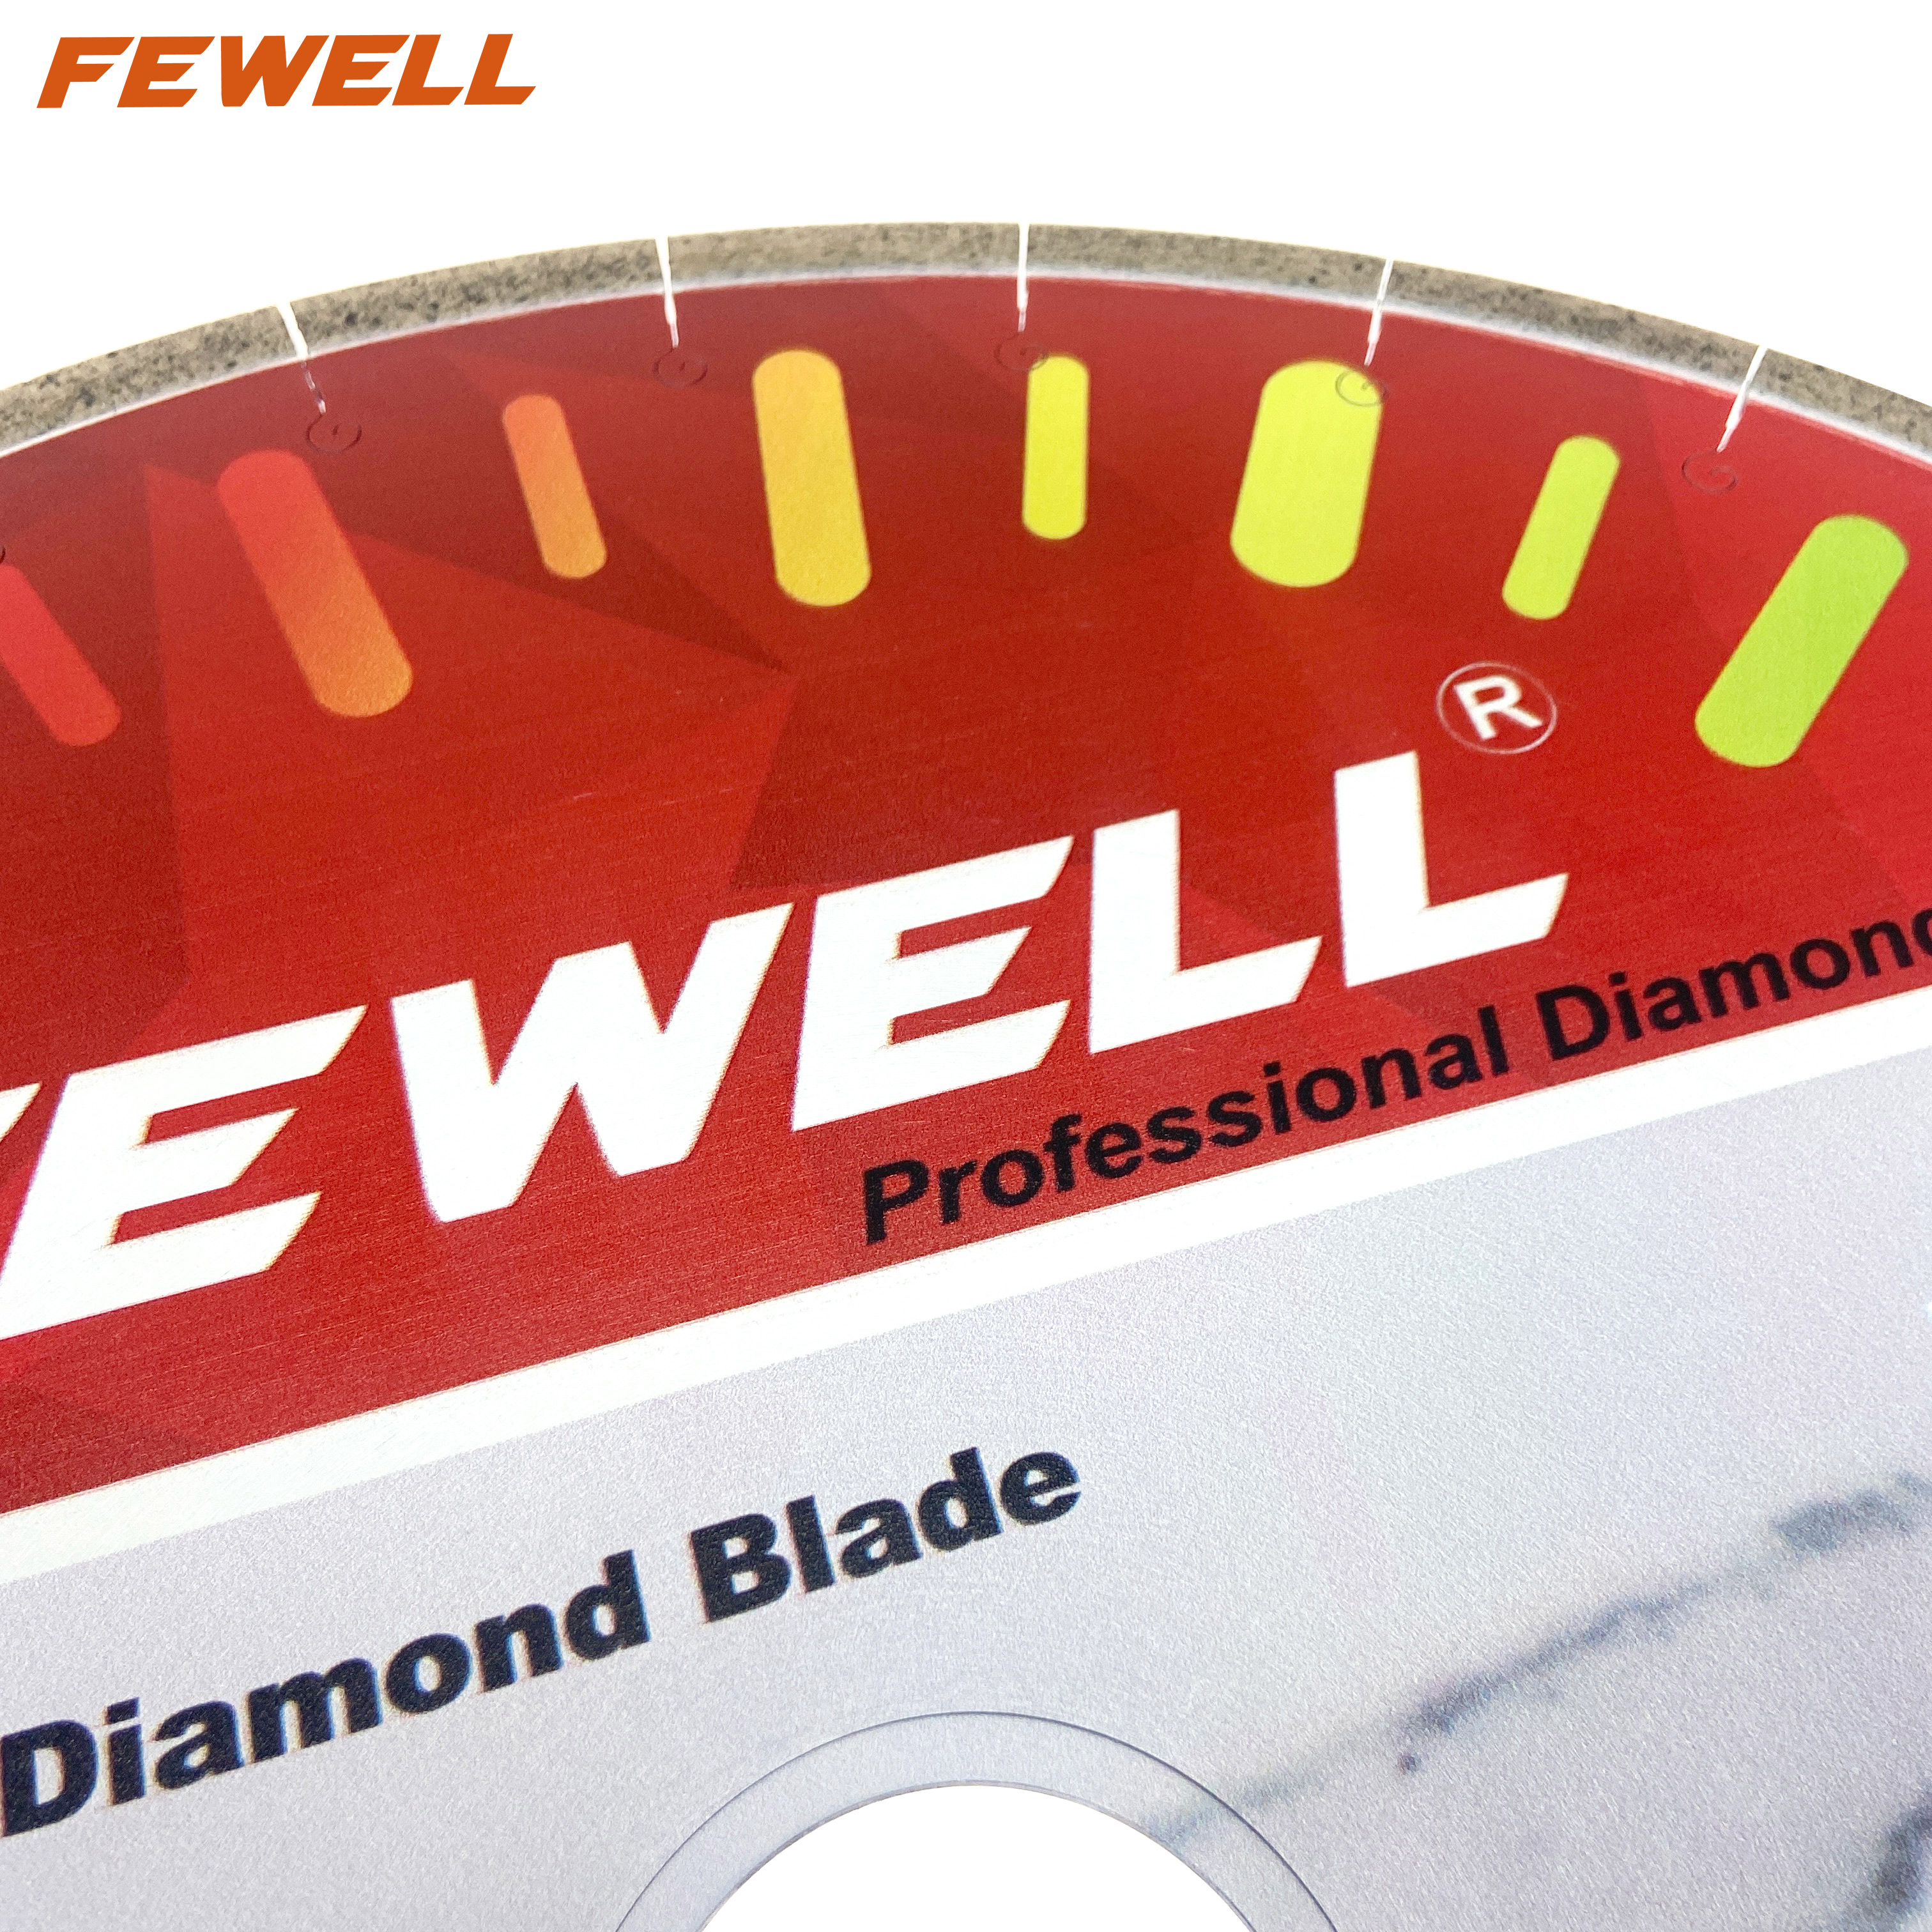 Hoja de sierra de diamante con ranura en J segmentada de 14 pulgadas, 350*10*60mm, soldada con plata Premium para cortar pavo Seramic Dekton